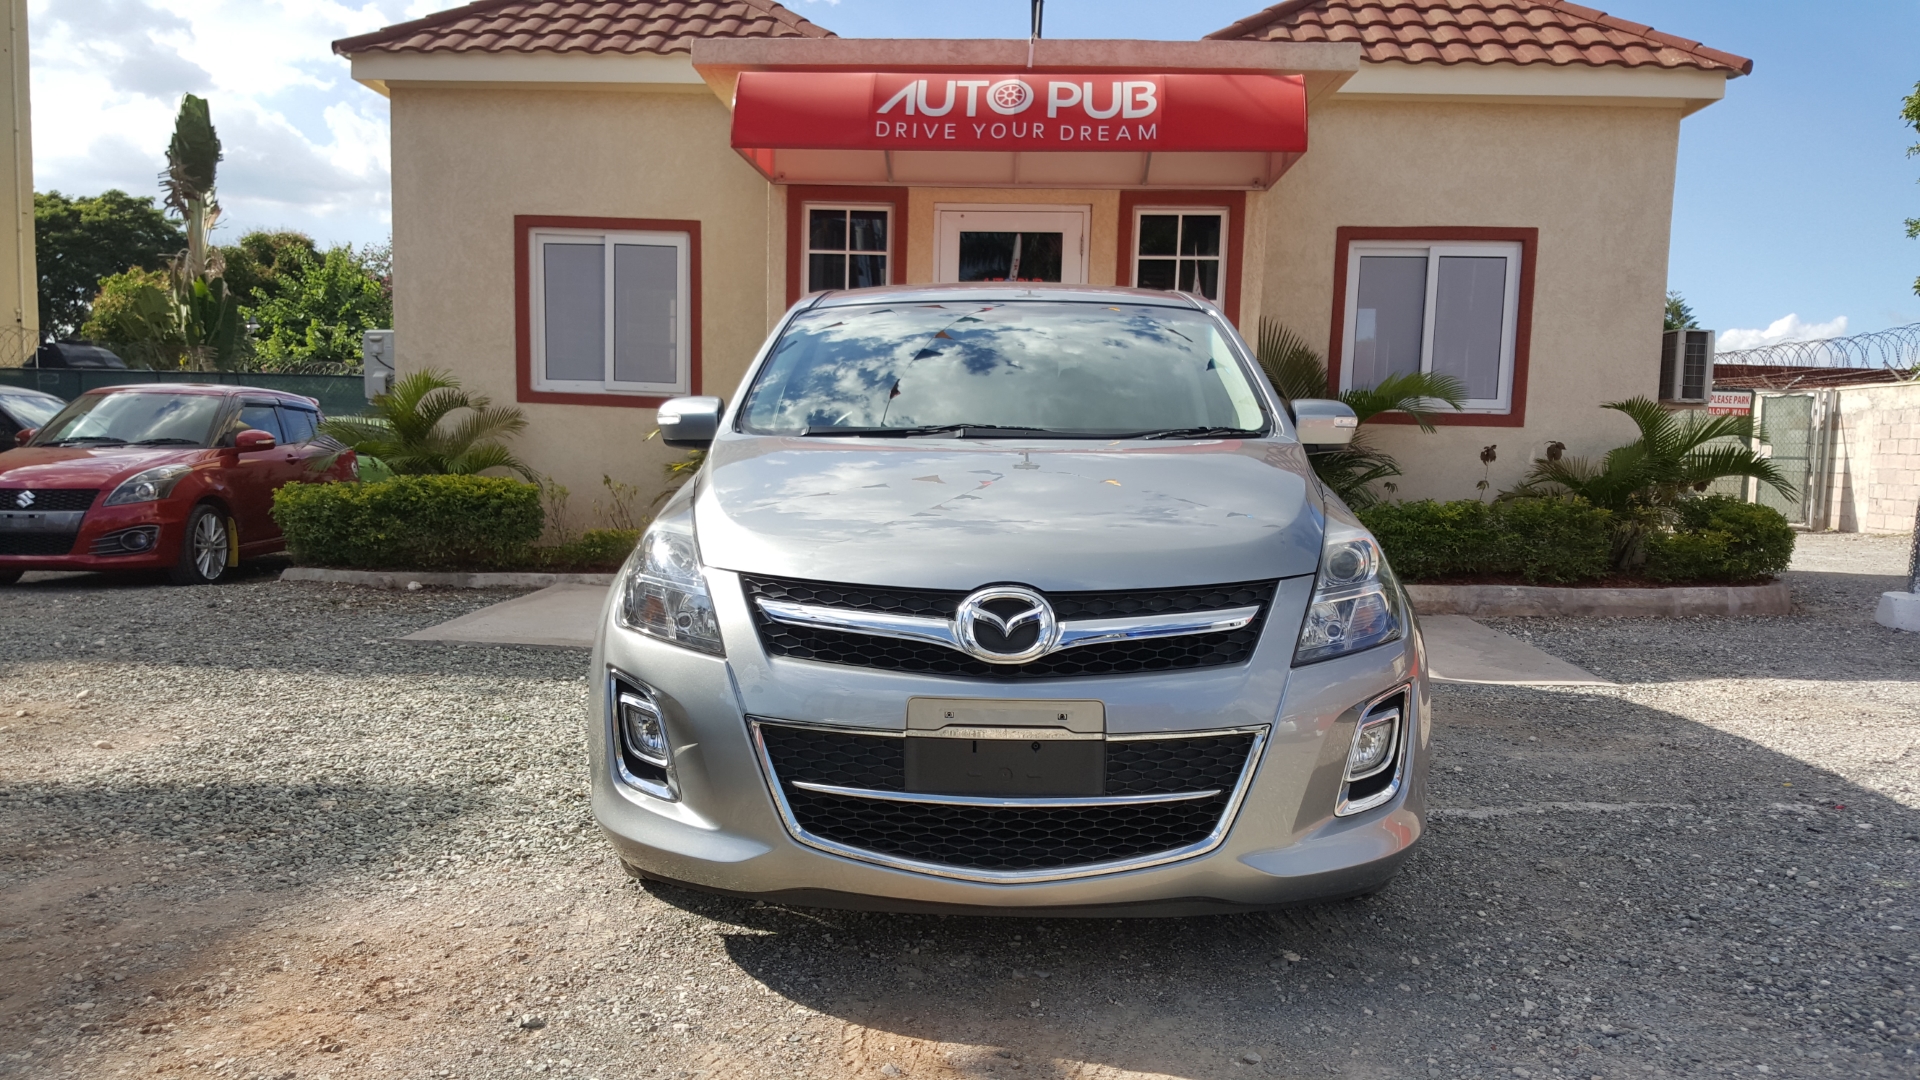 2013 Mazda MPV | Auto Pub Jamaica